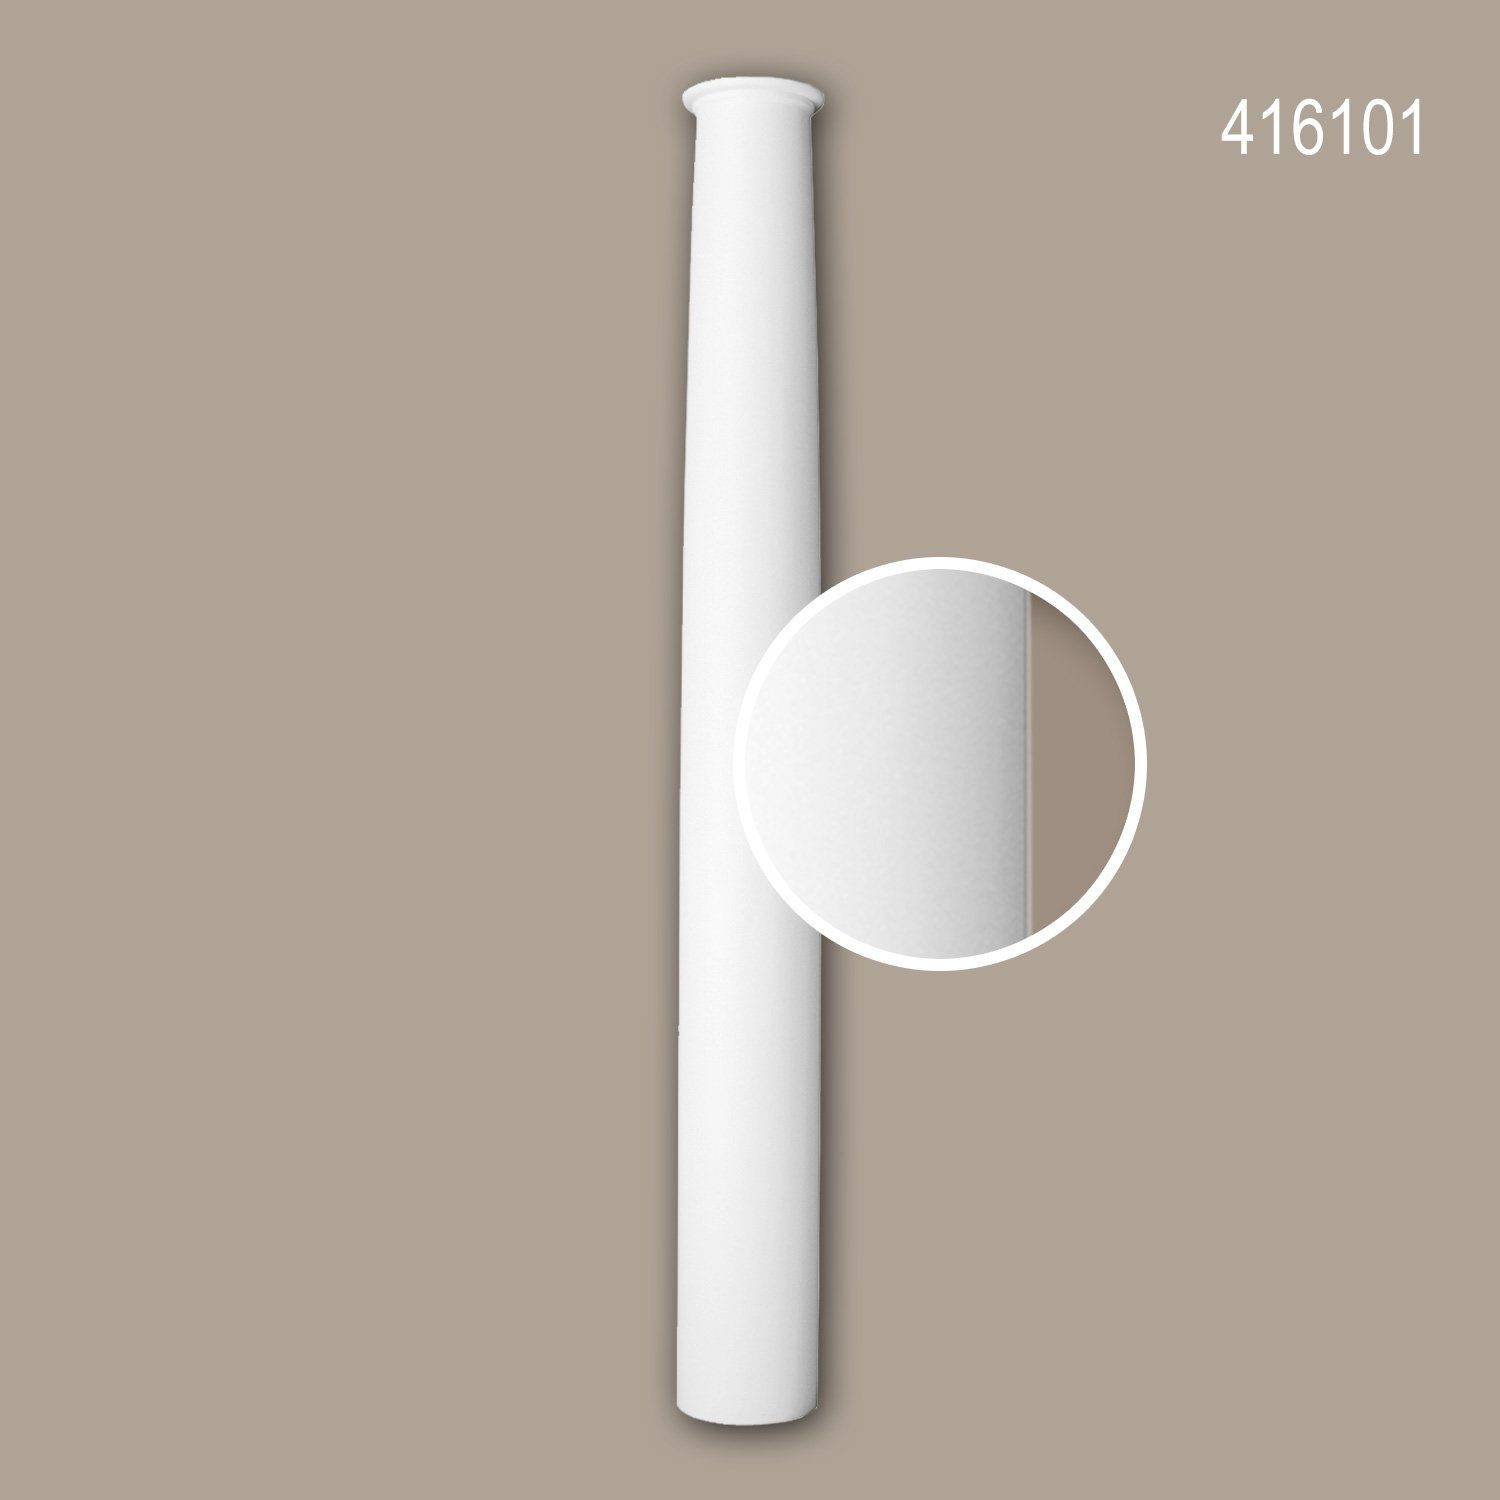 Profhome Wanddekoobjekt 416101 (Halbsäulen Schaft, 1 St., Fassadenstuck, Säule, Zierelement, Außenstuck, Durchmesser 33 cm), weiß, vorgrundiert, für Fassadendekoration, Stil: Toskanisch